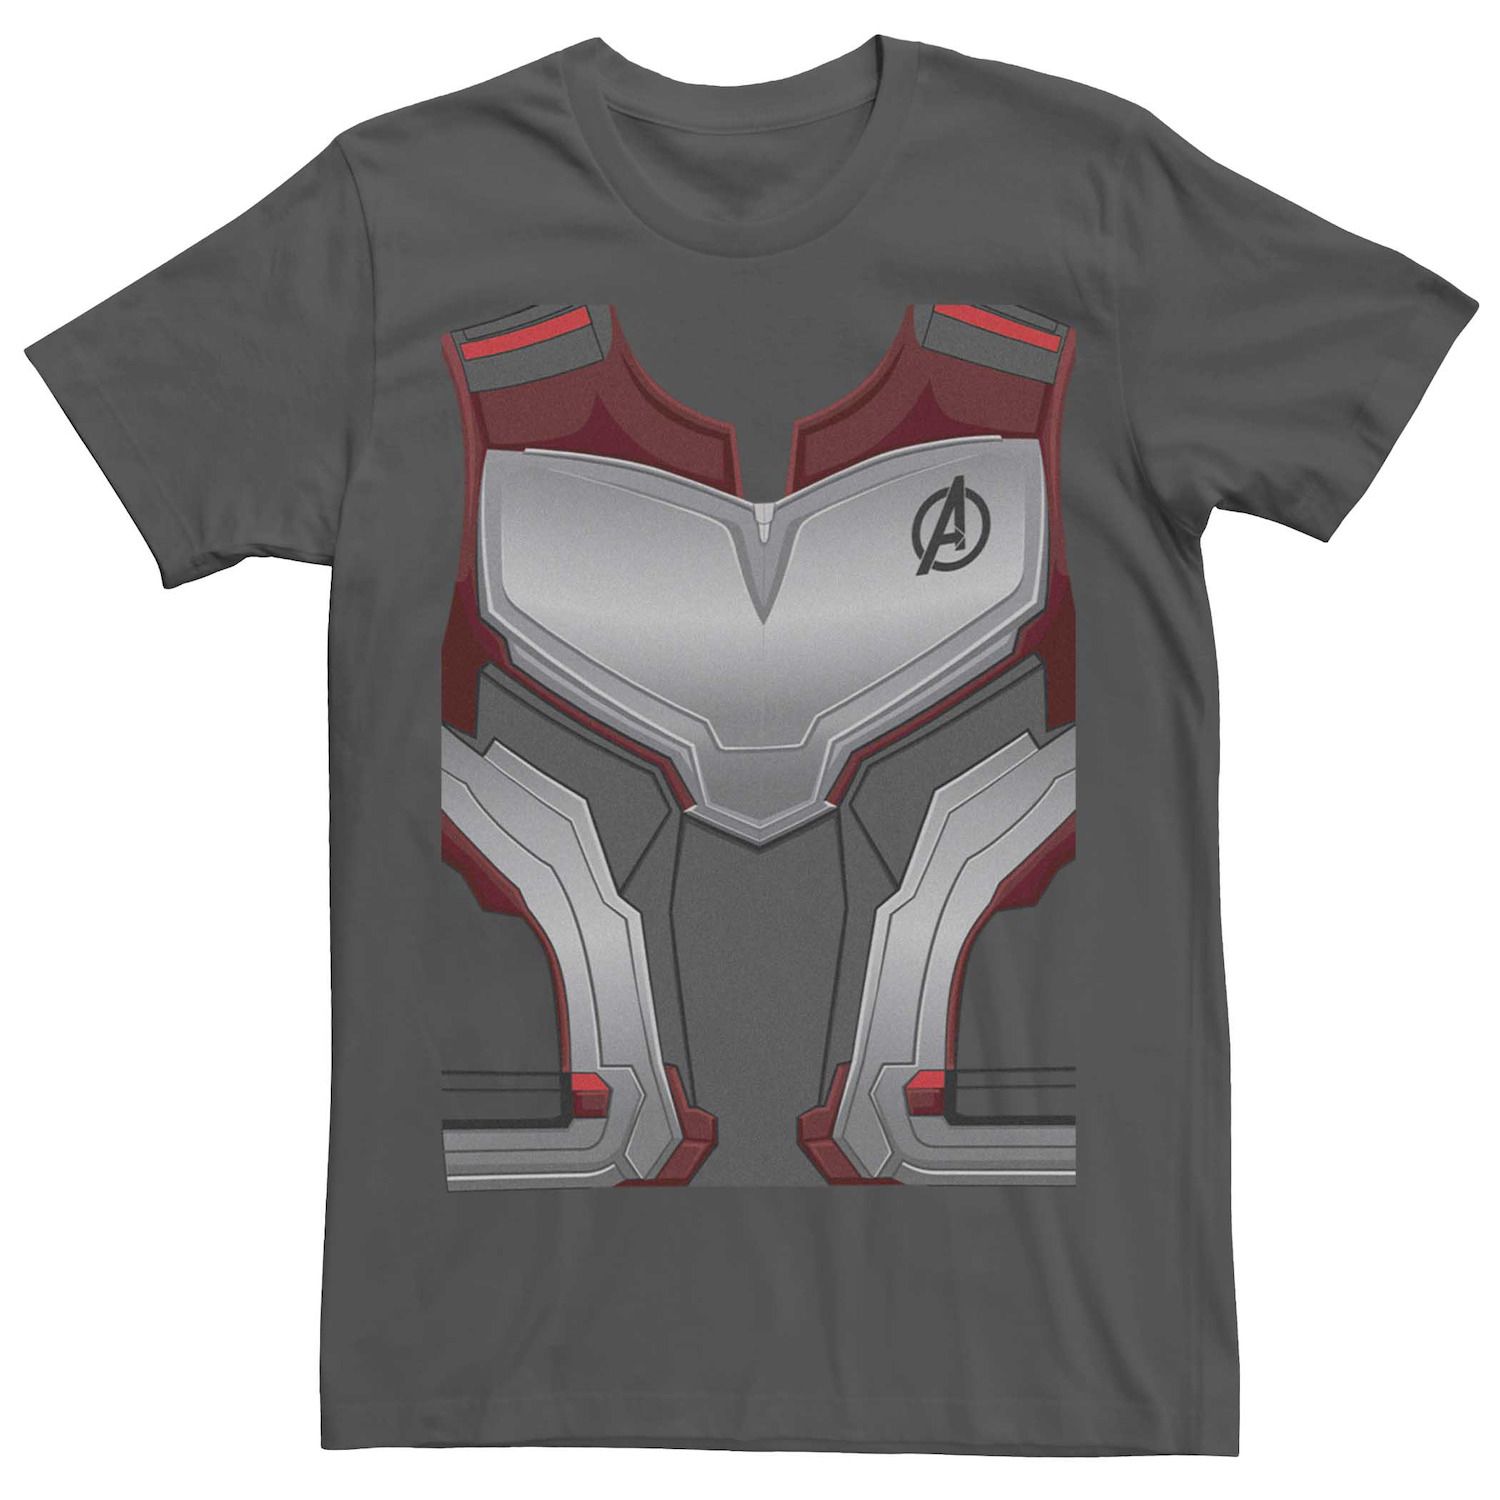 Мужской костюм-футболка Marvel Avengers Quantum Realm Licensed Character набор наклеек avengers endgame quantum realm suits